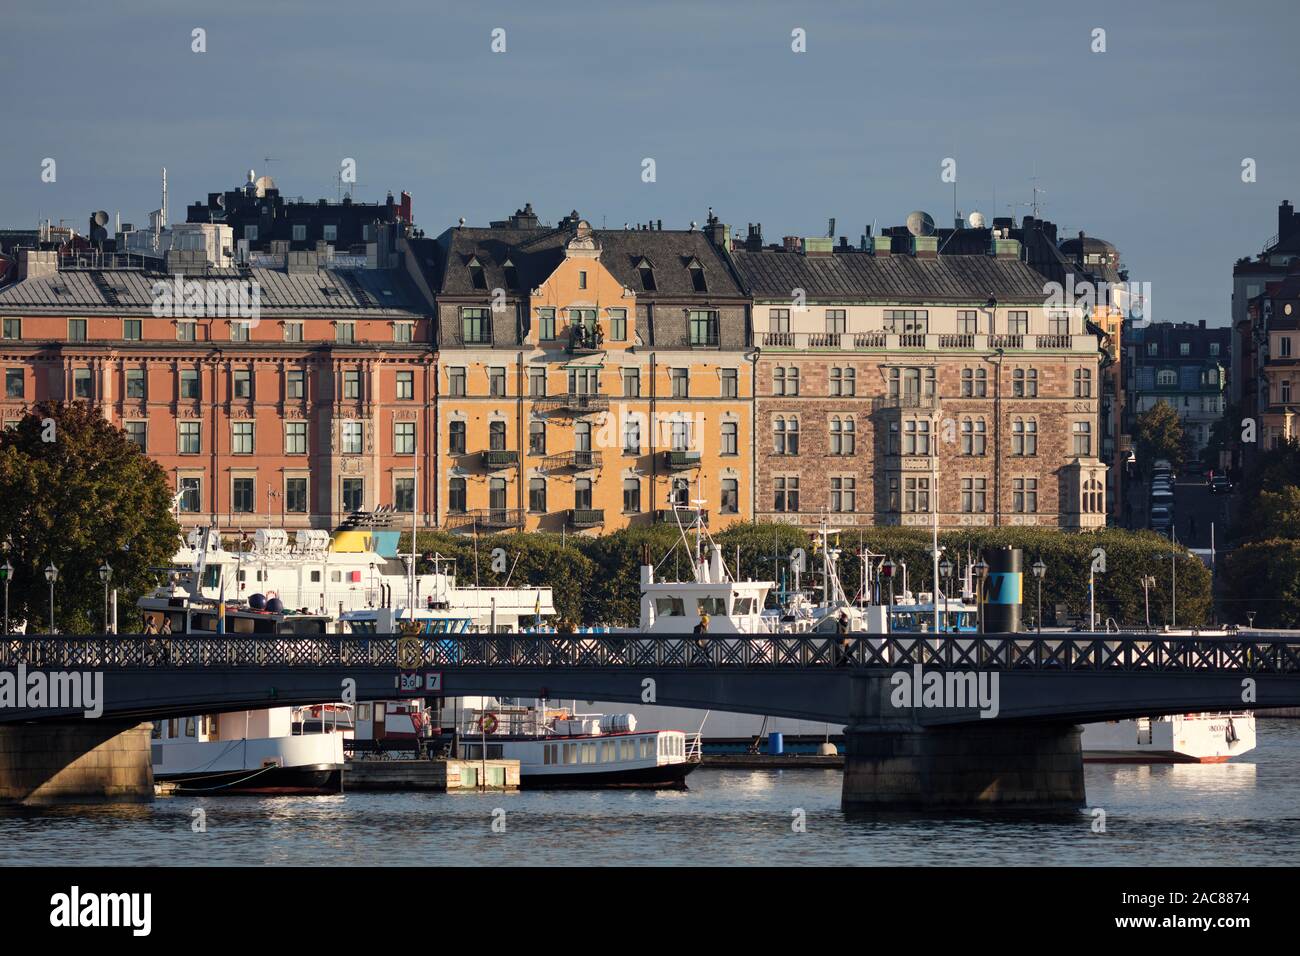 Skeppsholmsbron with Östermalm in the background, Stockholm, Sweden Stock Photo